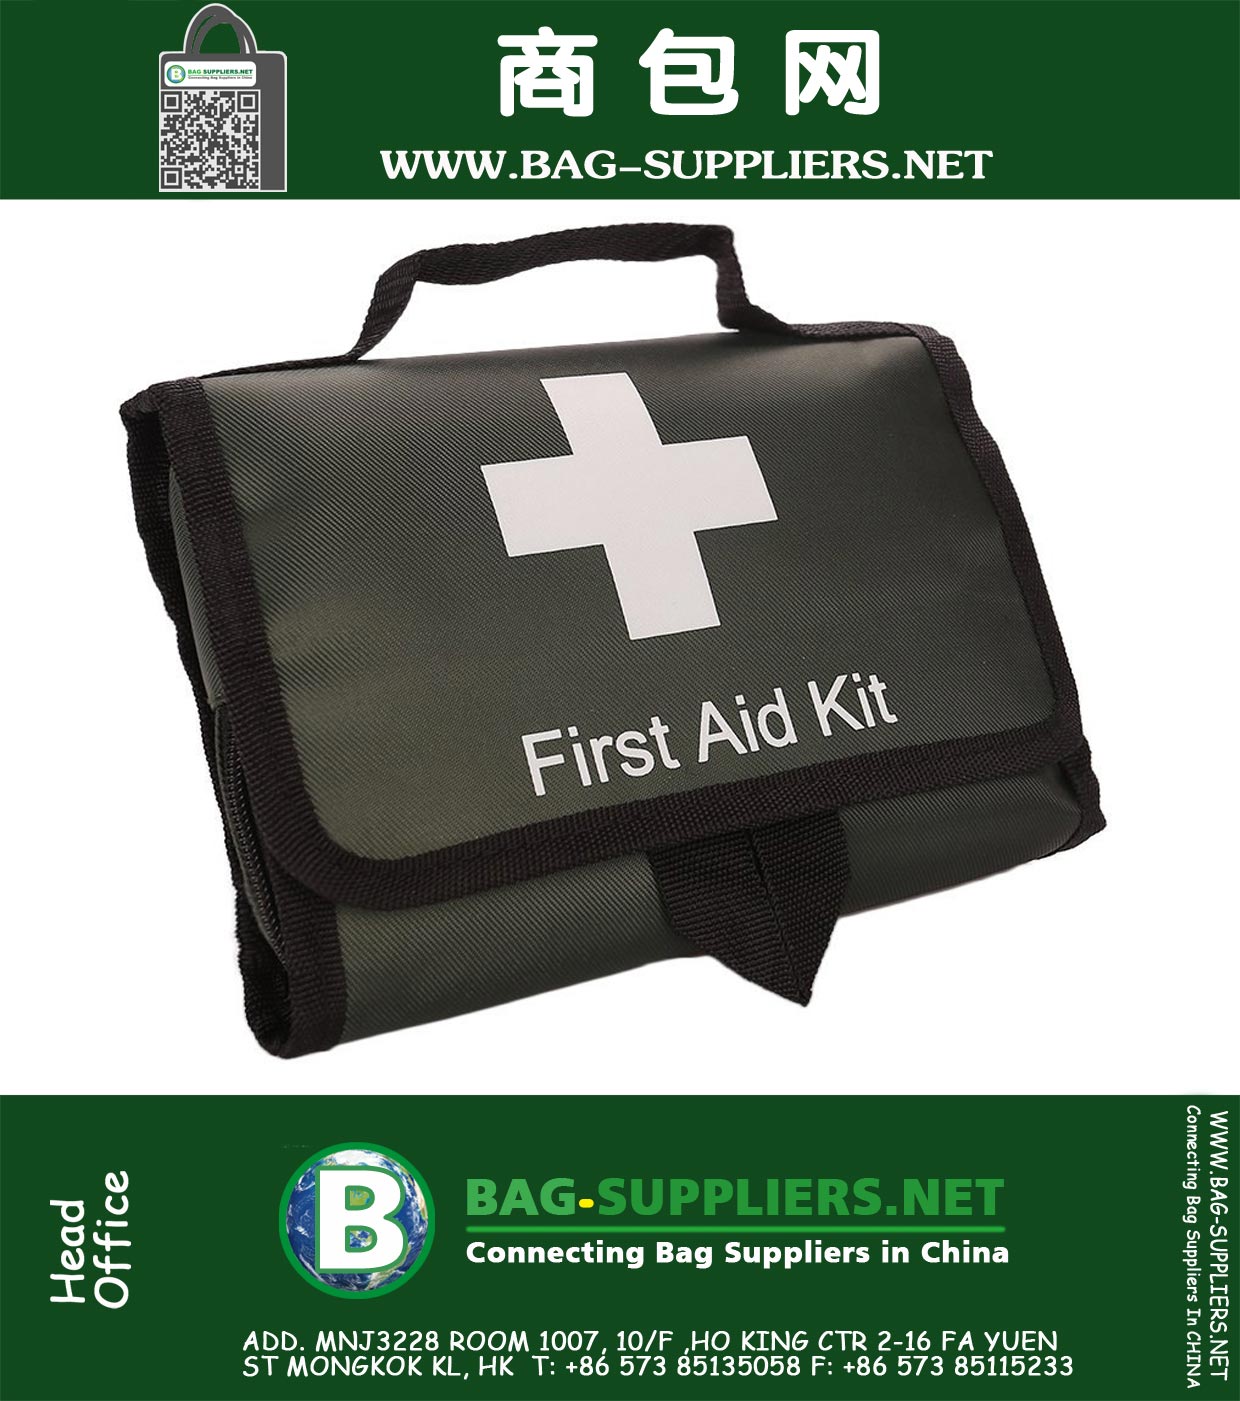 Комплект первой помощи Auto, всегда готов и готов к использованию в вашем автомобиле, 100 штук Медицинский комплект, комплект для экстренной помощи в путешествии, комплект для первой помощи для пеших прогулок, сумка для выживания в аварийном режиме